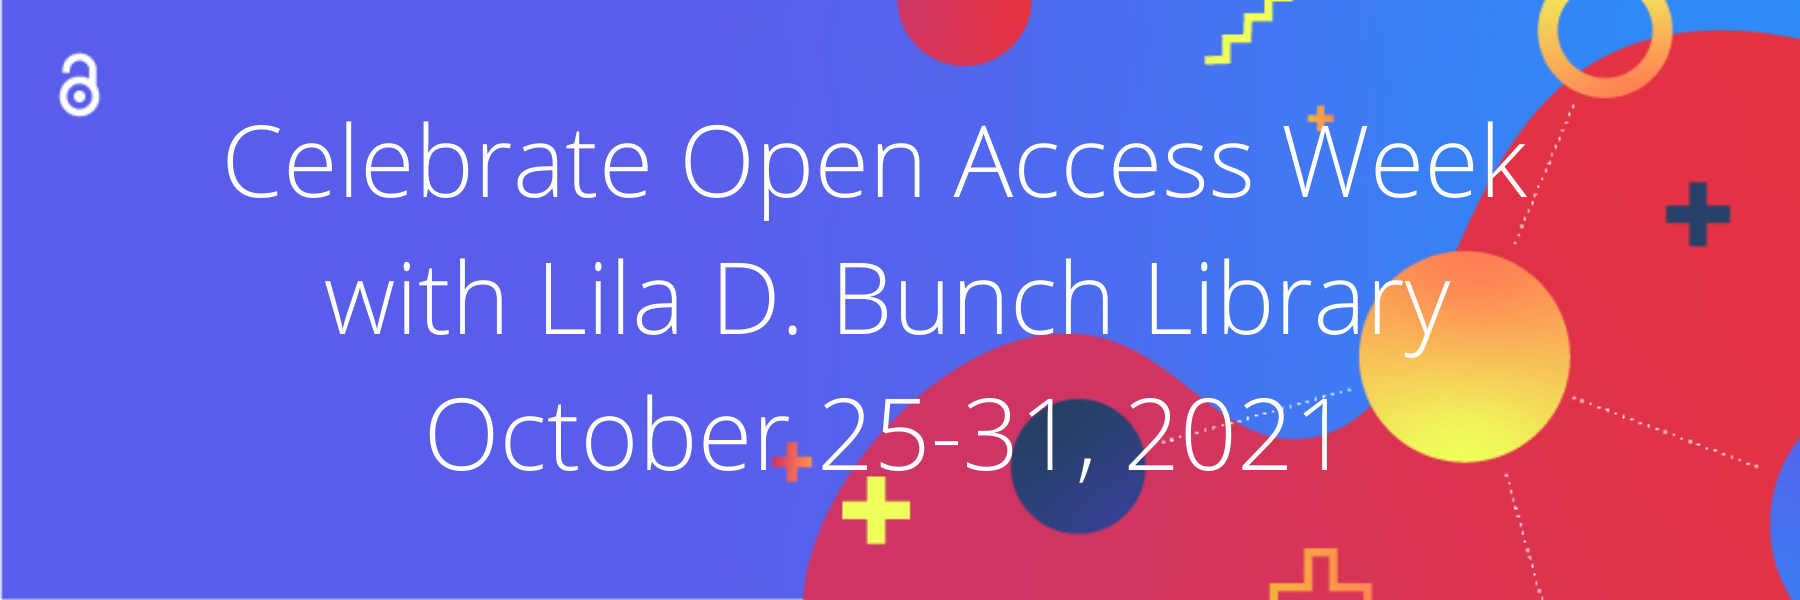 Open Access Week 2021